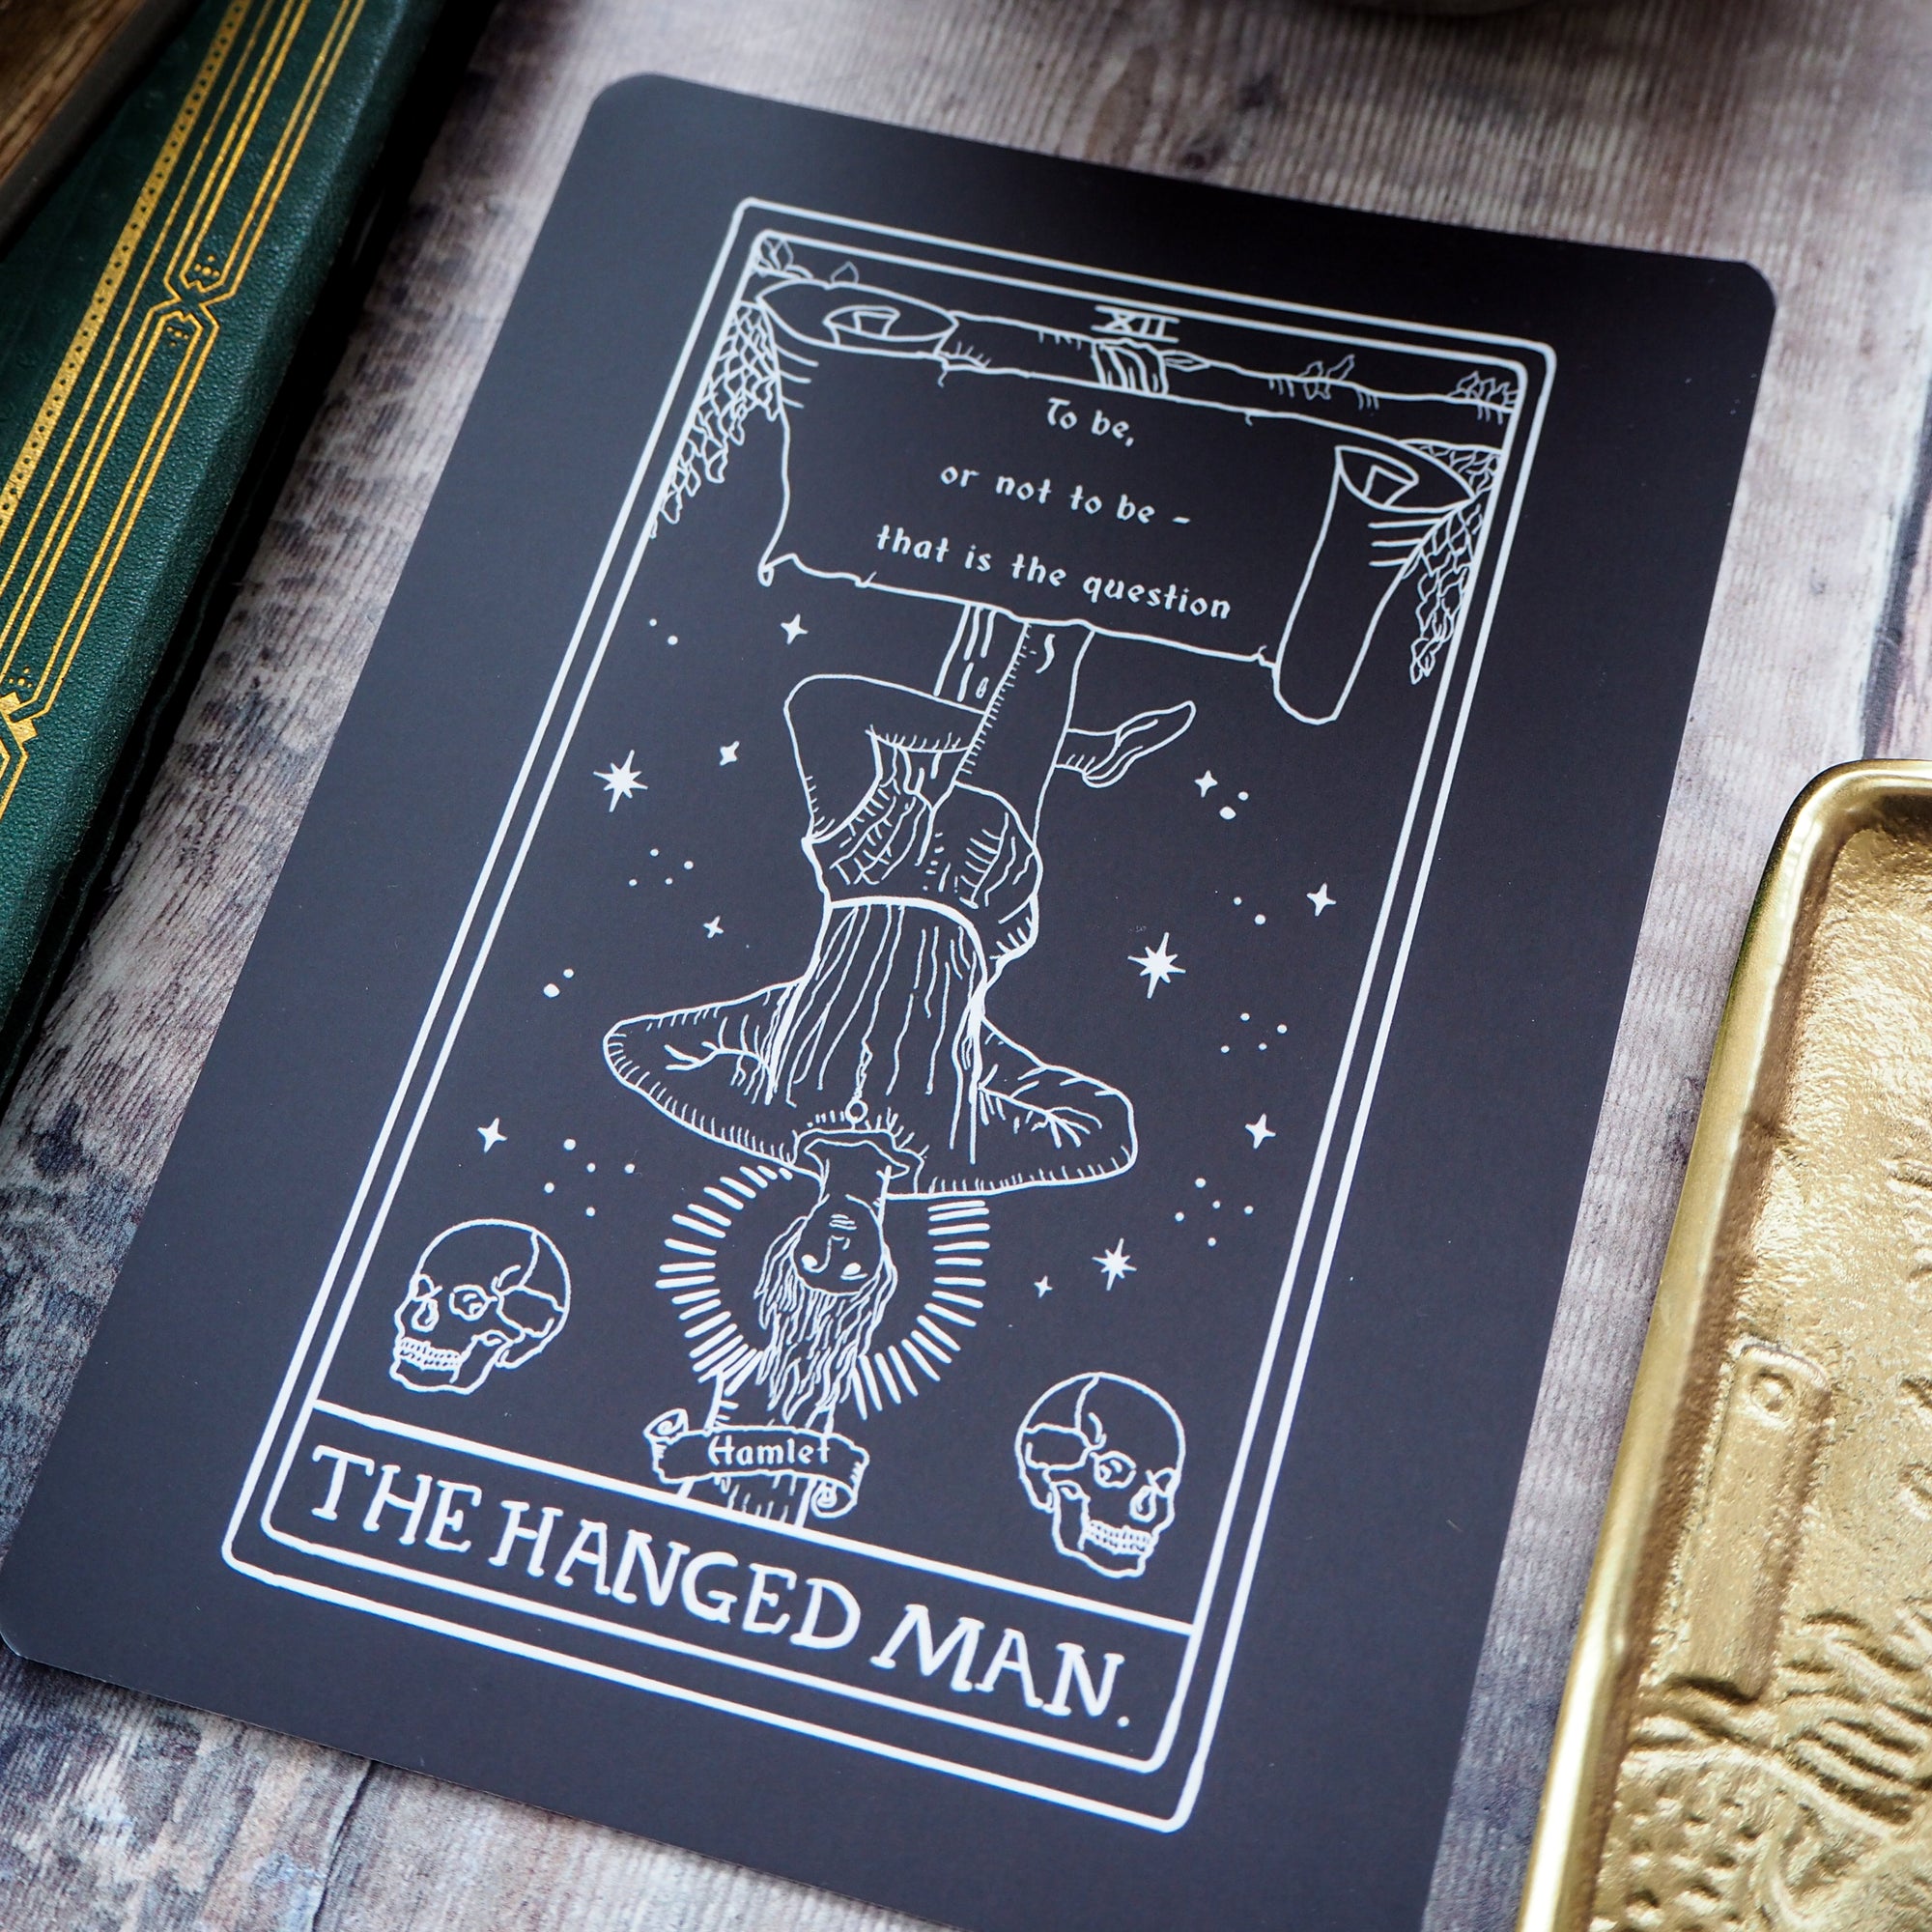 Hamlet Tarot Card Mini Print - The Hanged Man - Shakespeare Tarot Collection